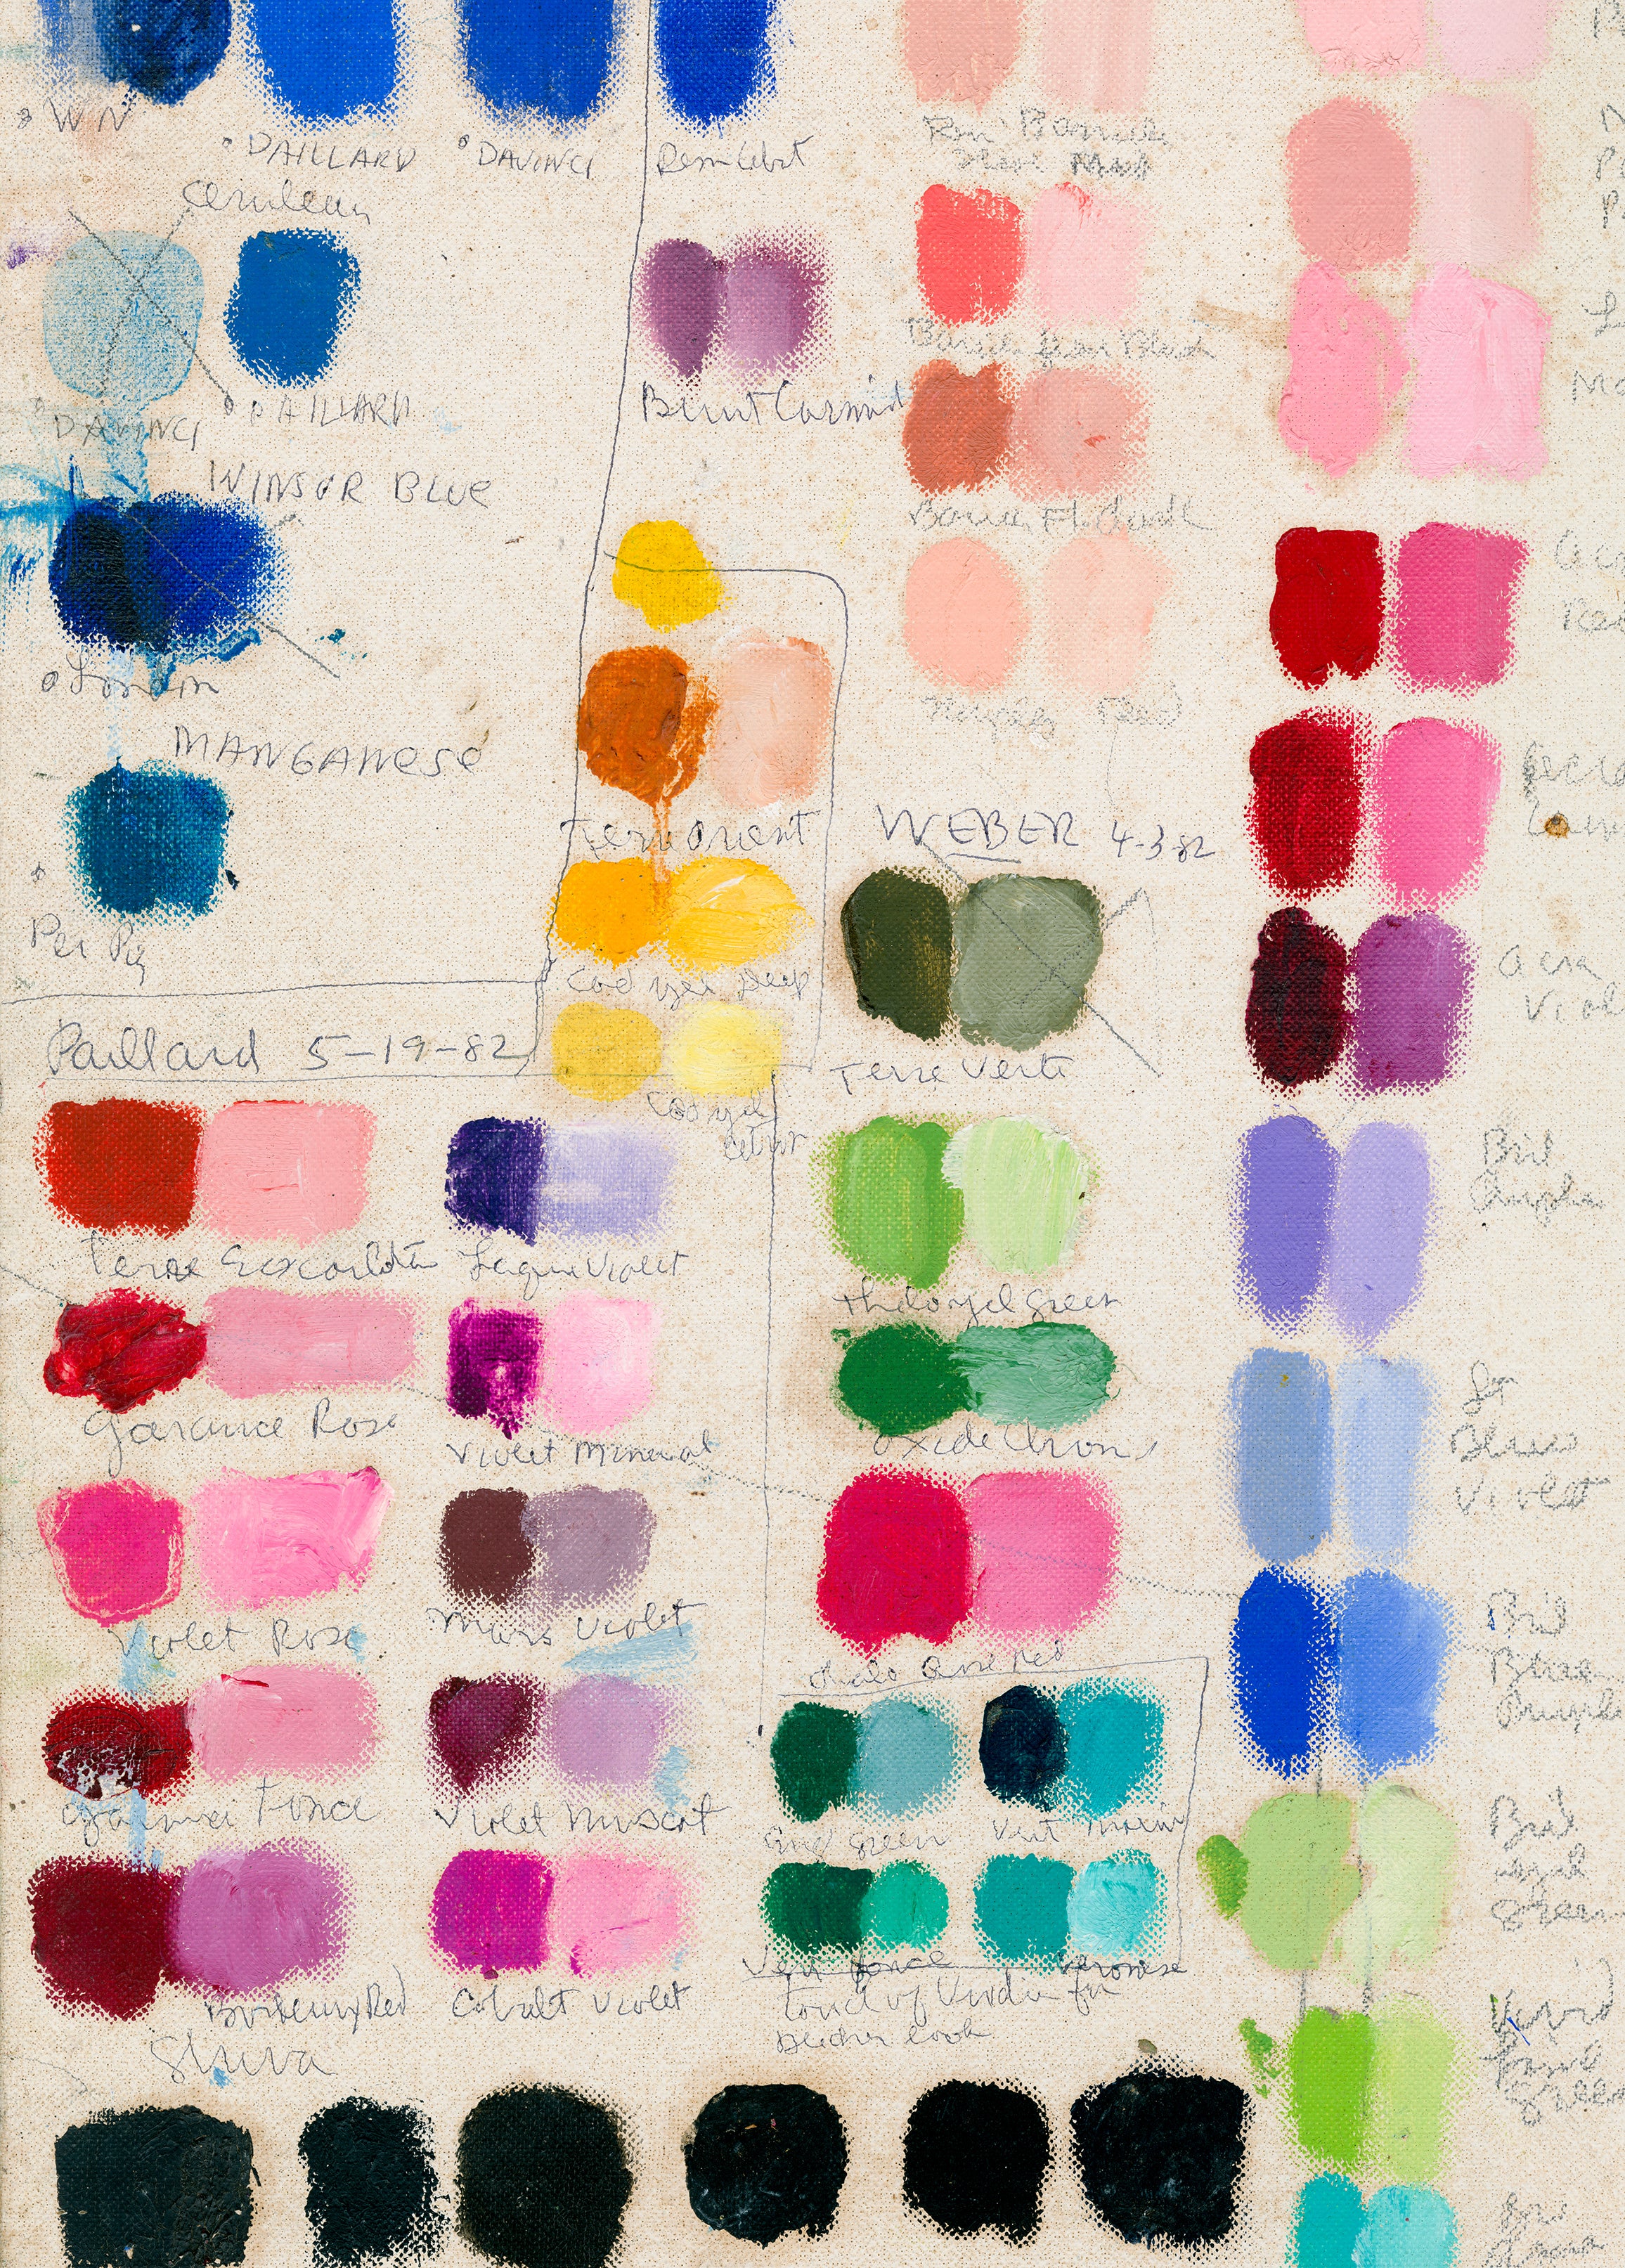 Painter's Palette - John Derian - 1,000 Pieces